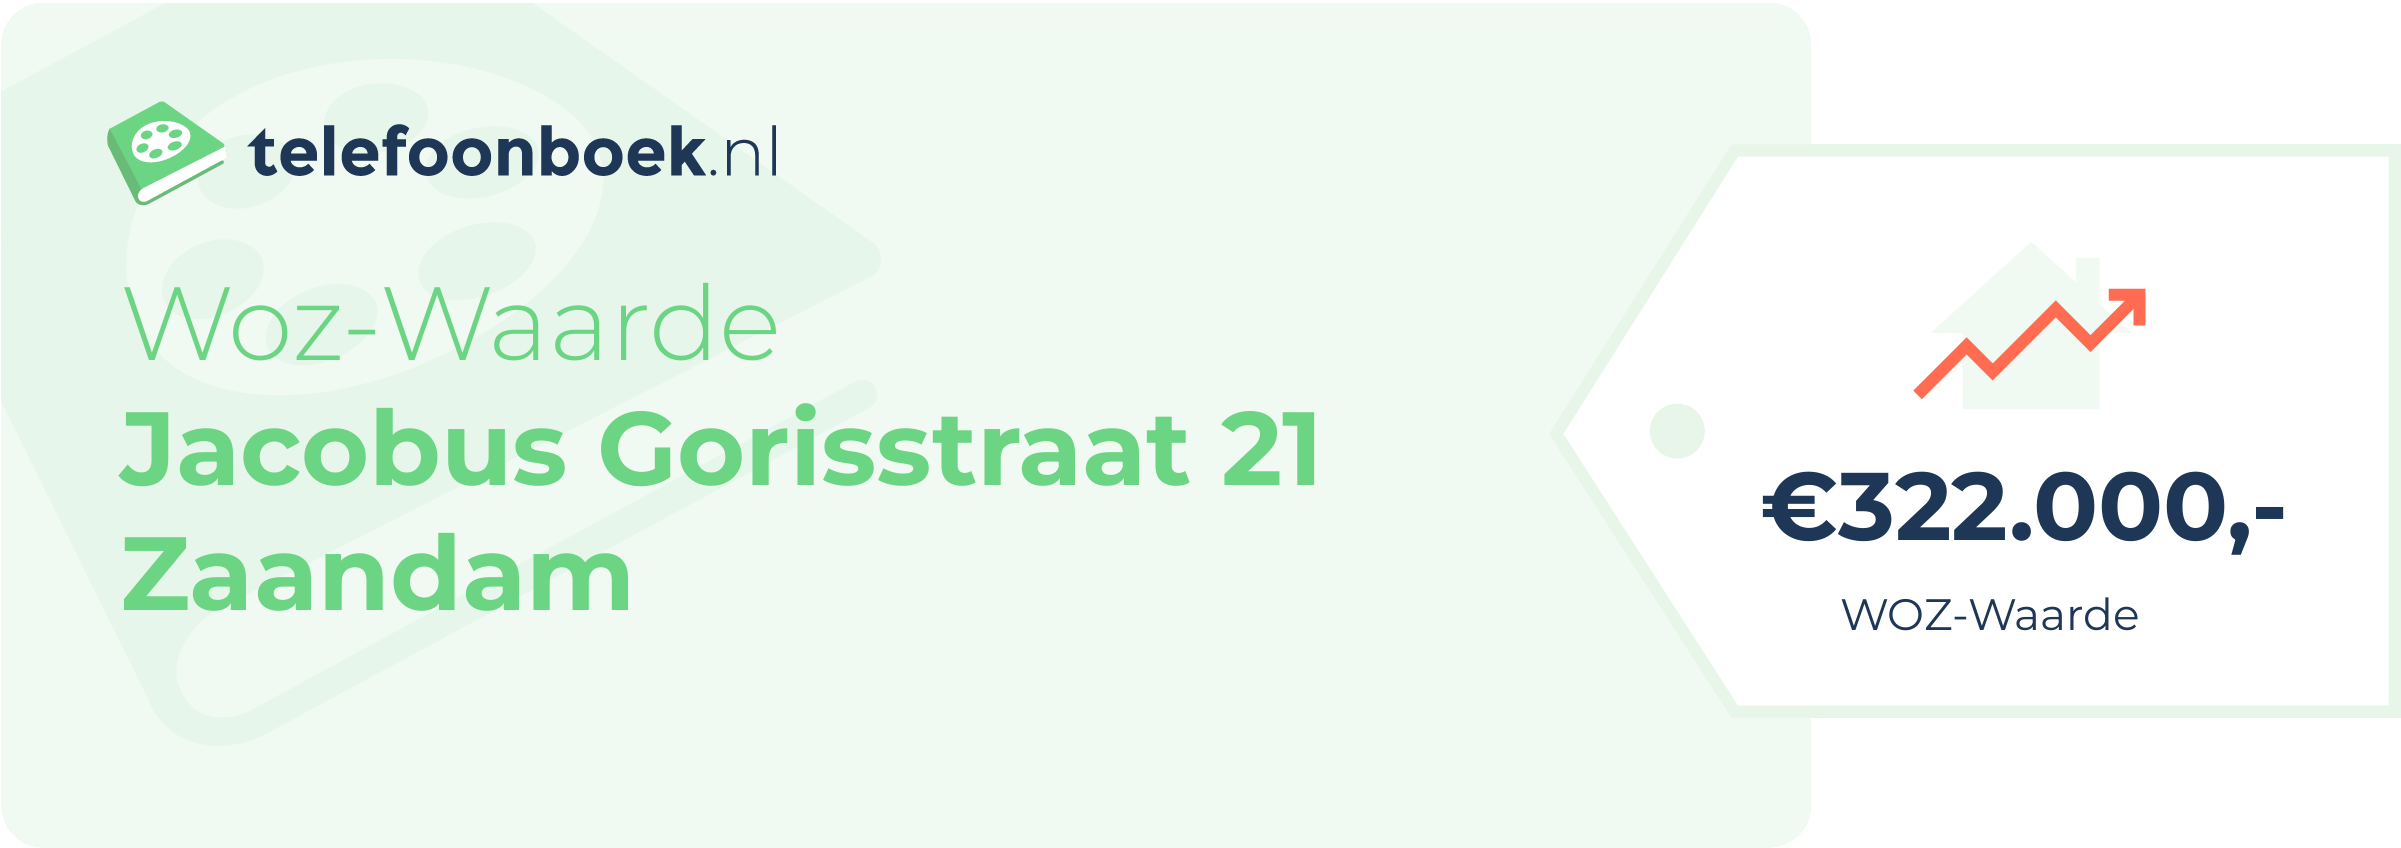 WOZ-waarde Jacobus Gorisstraat 21 Zaandam